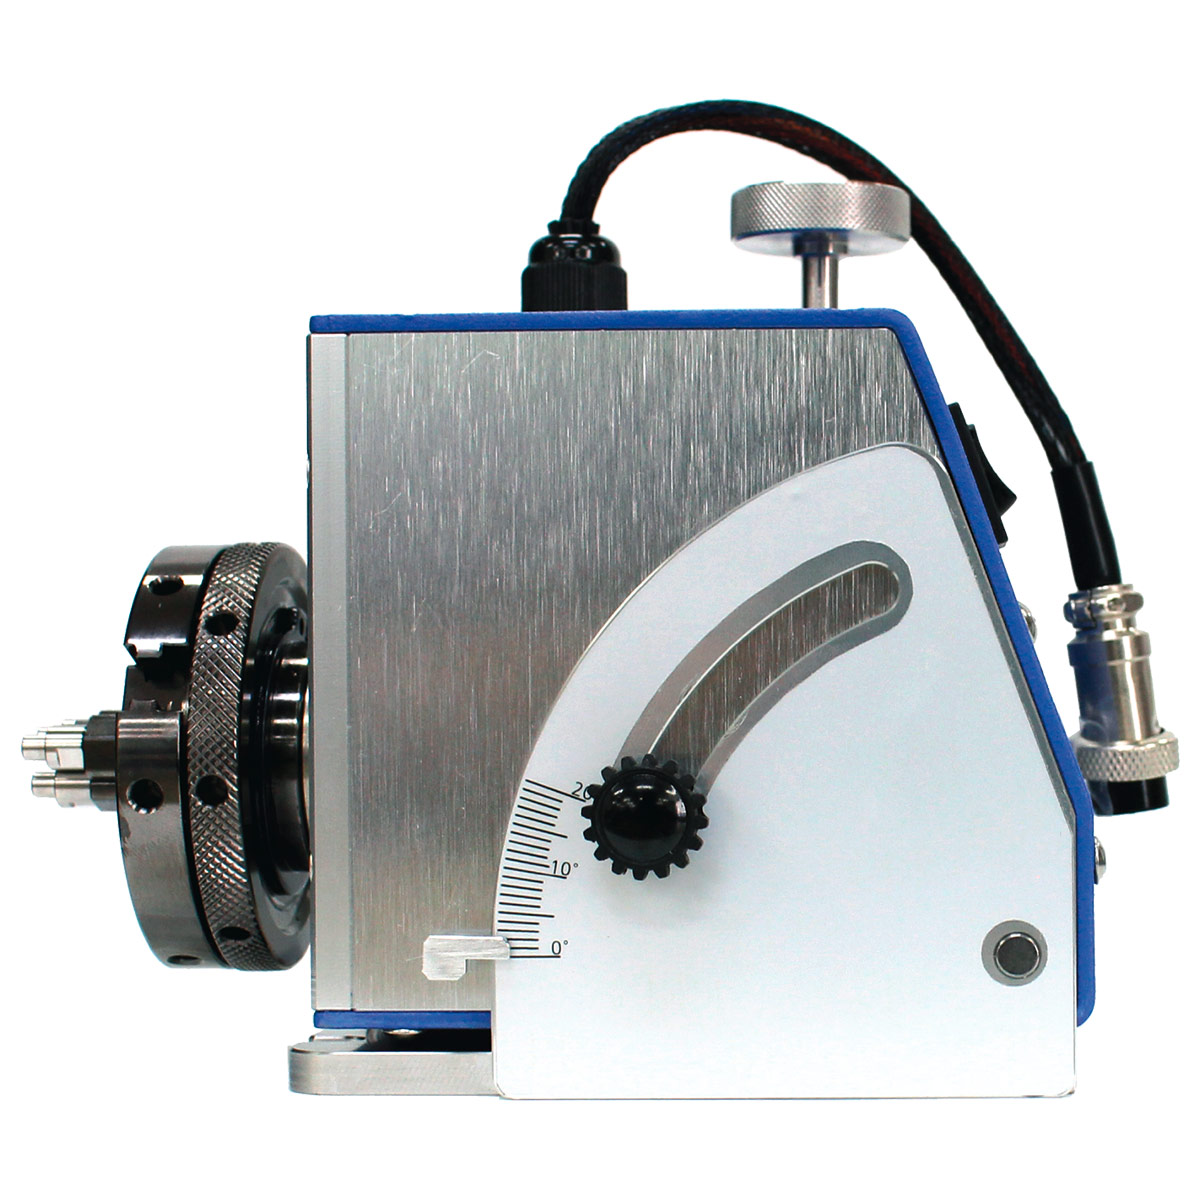 Dreh-Spannvorrichtung für Laser-Graviermaschine Ingraser